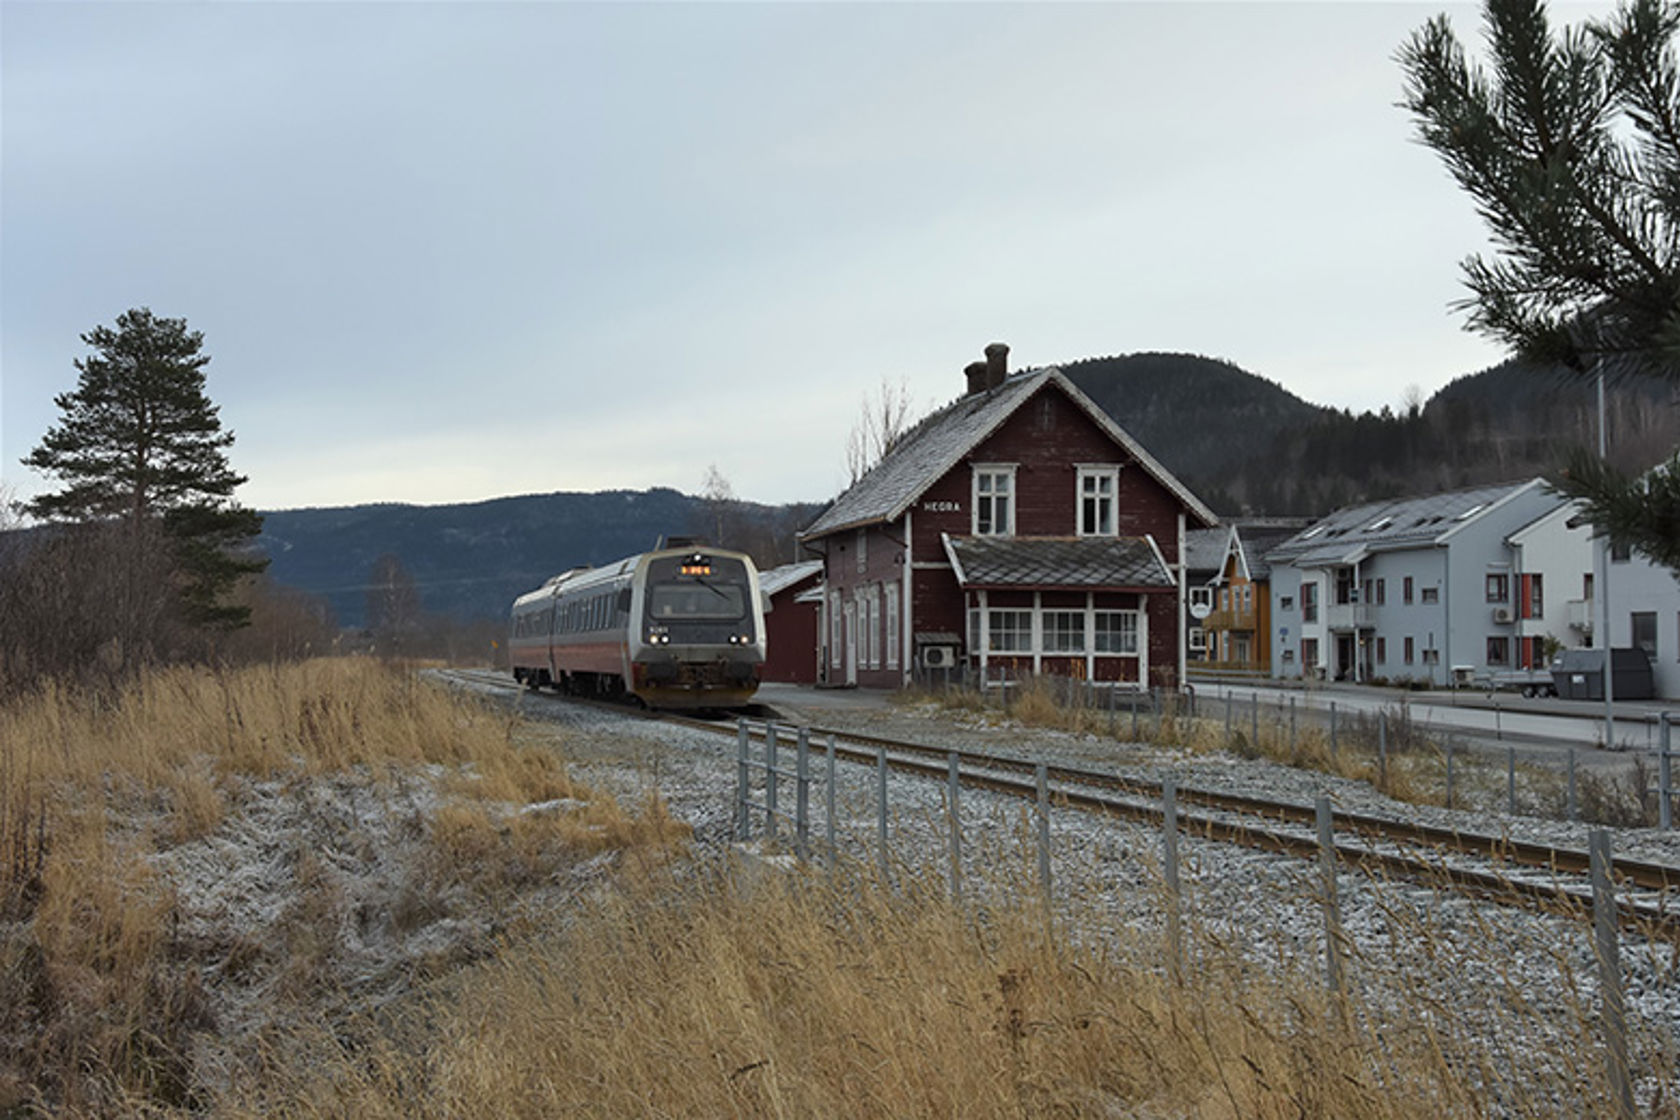 Bilde av tog som kommer til en stasjon.